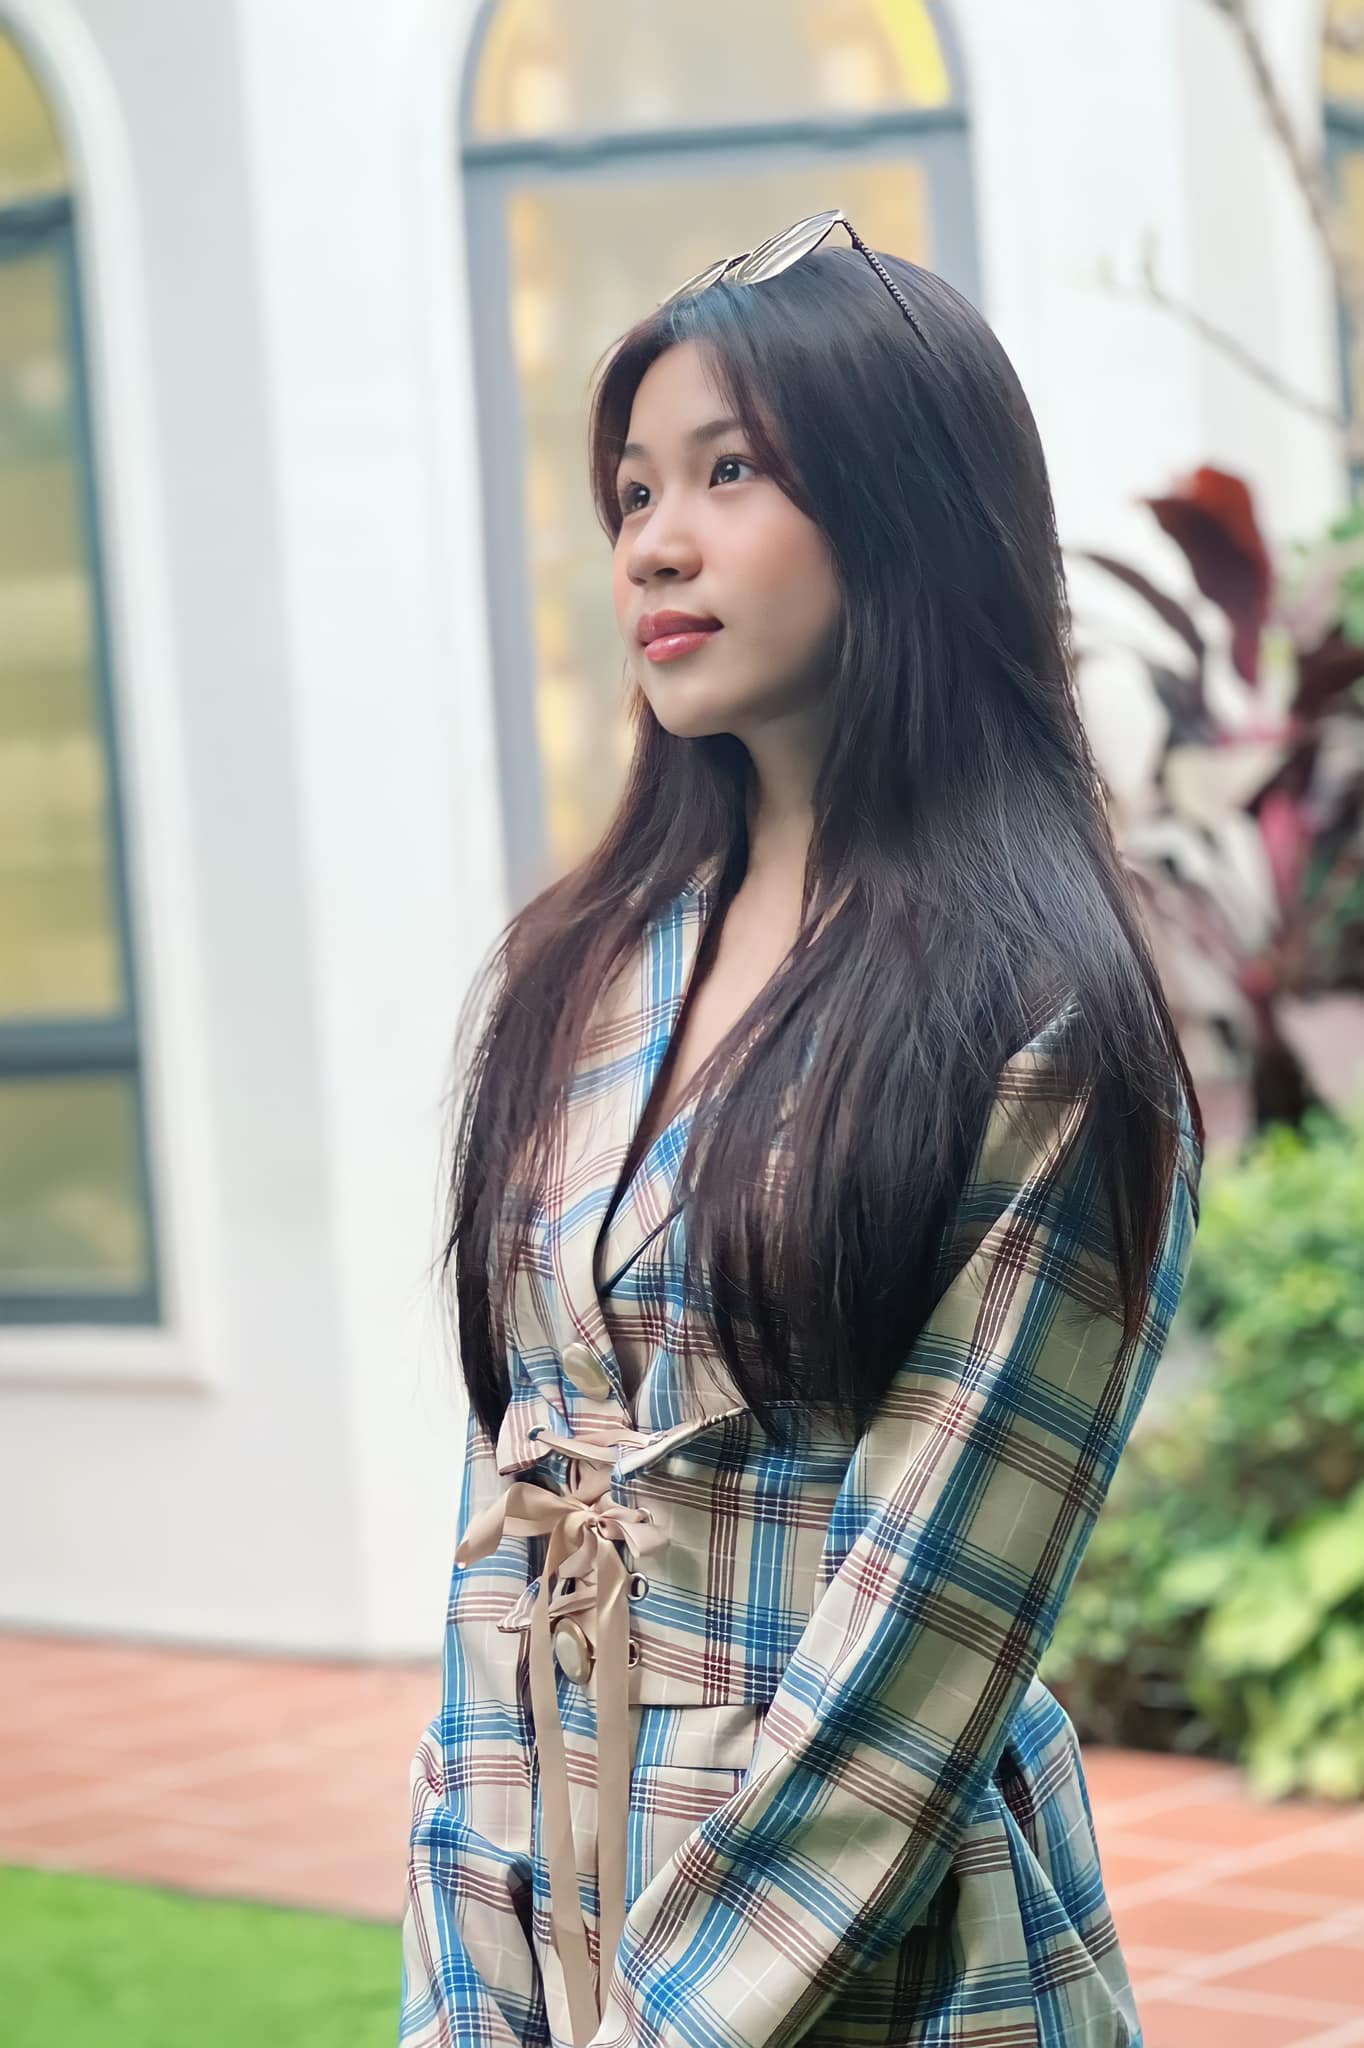 Ái nữ 17 tuổi nhà Lưu Thiên Hương chụp hình ở bụi cây góc vườn vẫn xinh đẹp khó rời mắt - Ảnh 3